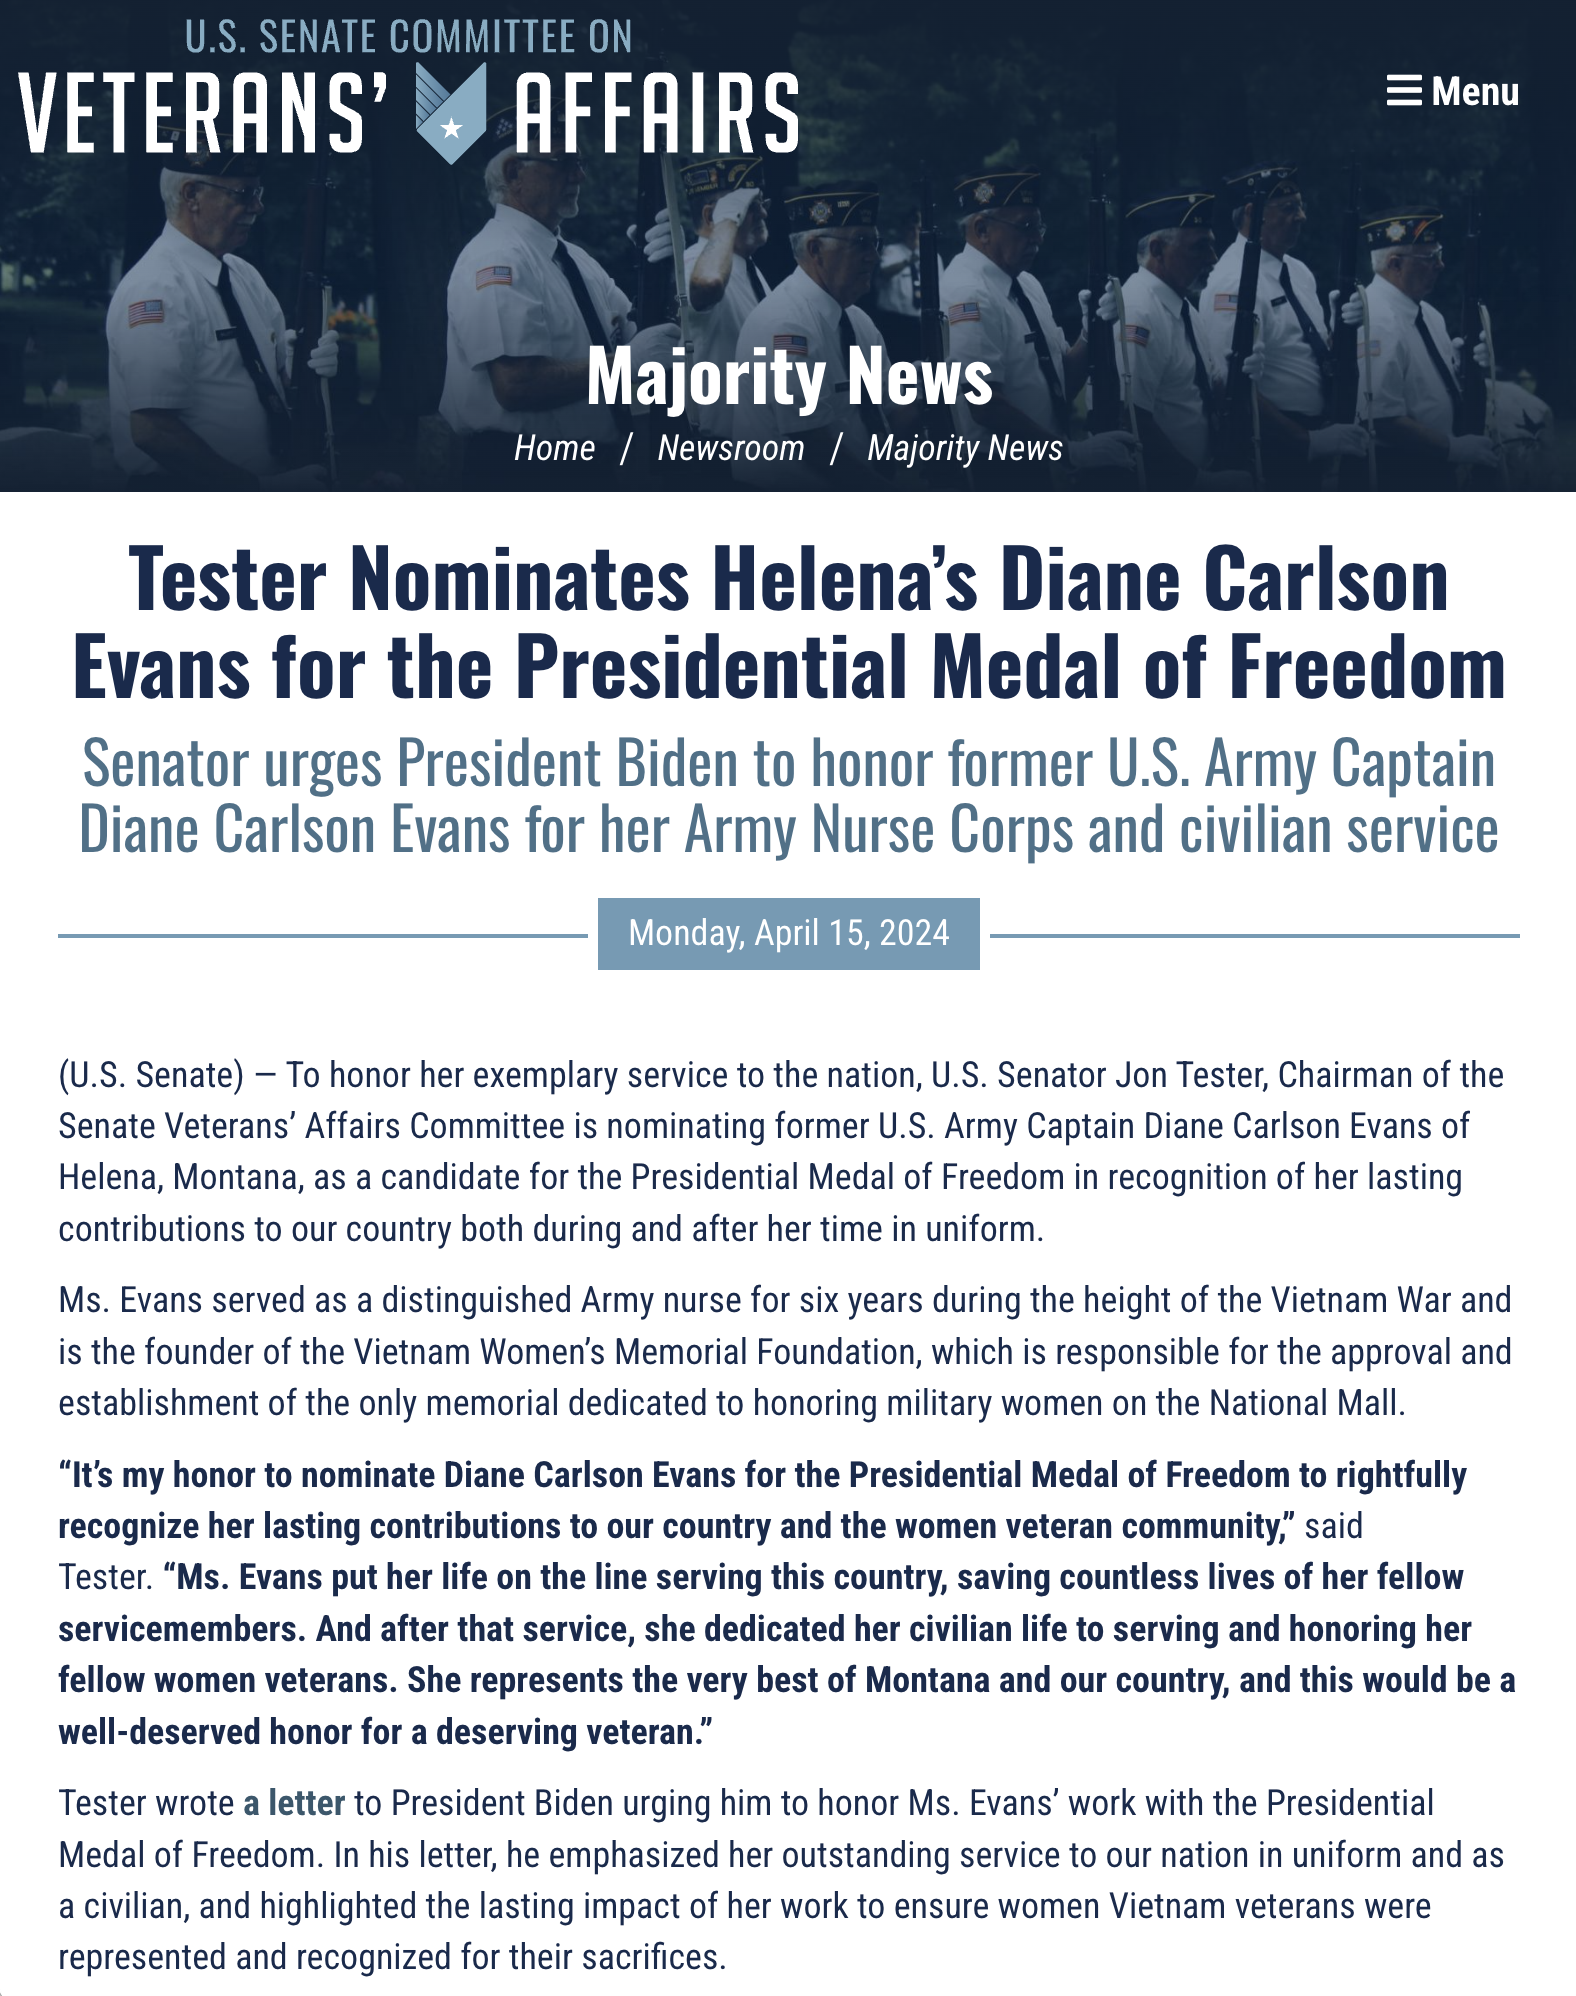 Senator John Tester nominates Diane Carlson Evans for the Presidential Medal of Freedom